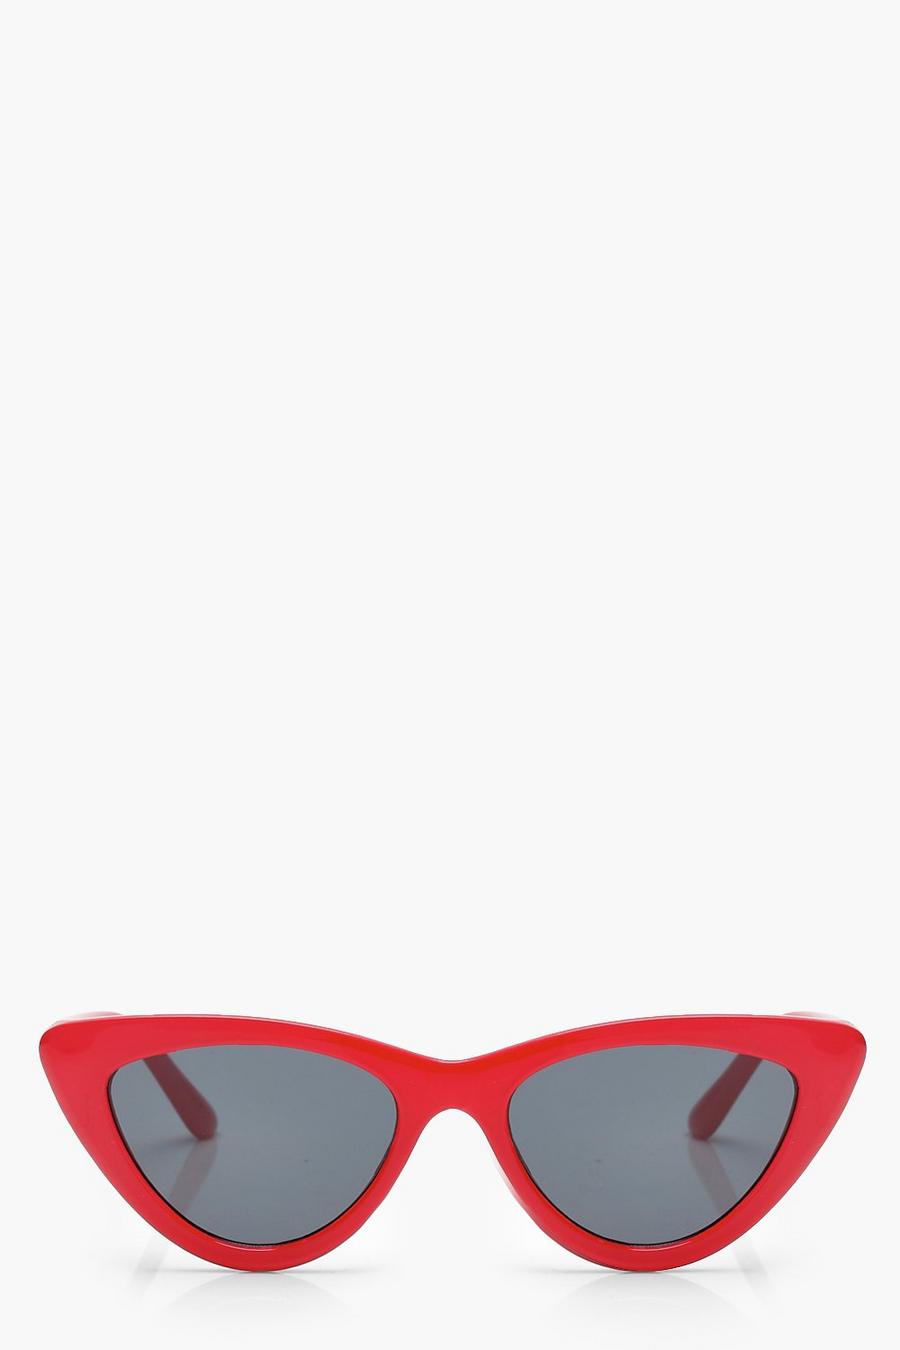 אדום משקפי שמש דקות במיוחד בצורת עין חתול image number 1